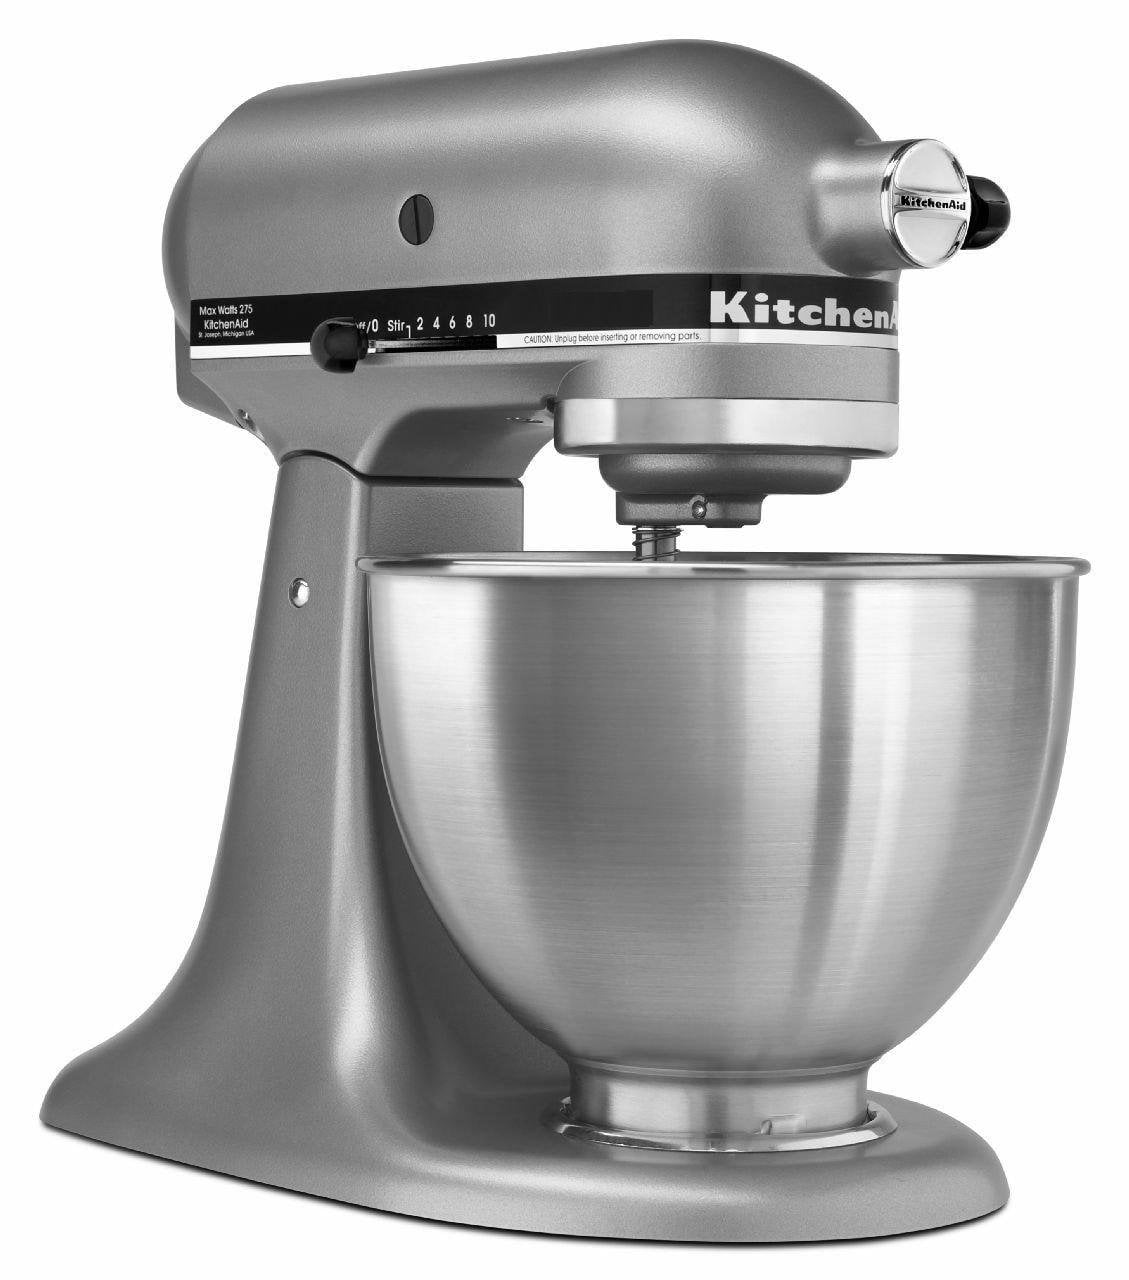 KitchenAid Classic Deluxe Series 4.5QT 300 Watt Tilt Head Stand Mixer, White